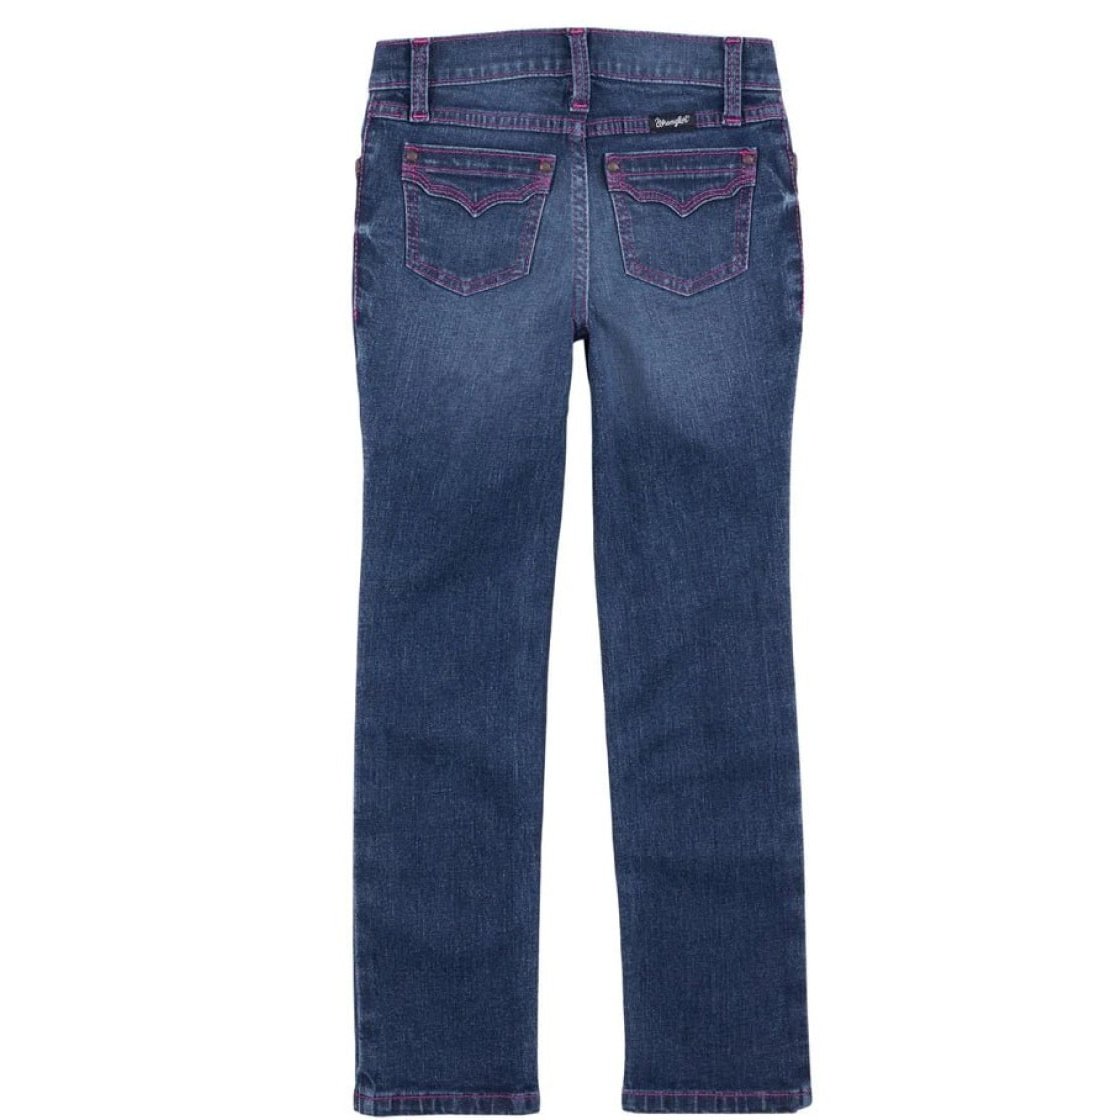 Wrangler Girl’s Jeans Reg or Slim Straight Leg Pink Stitch 112317330 - Wrangler